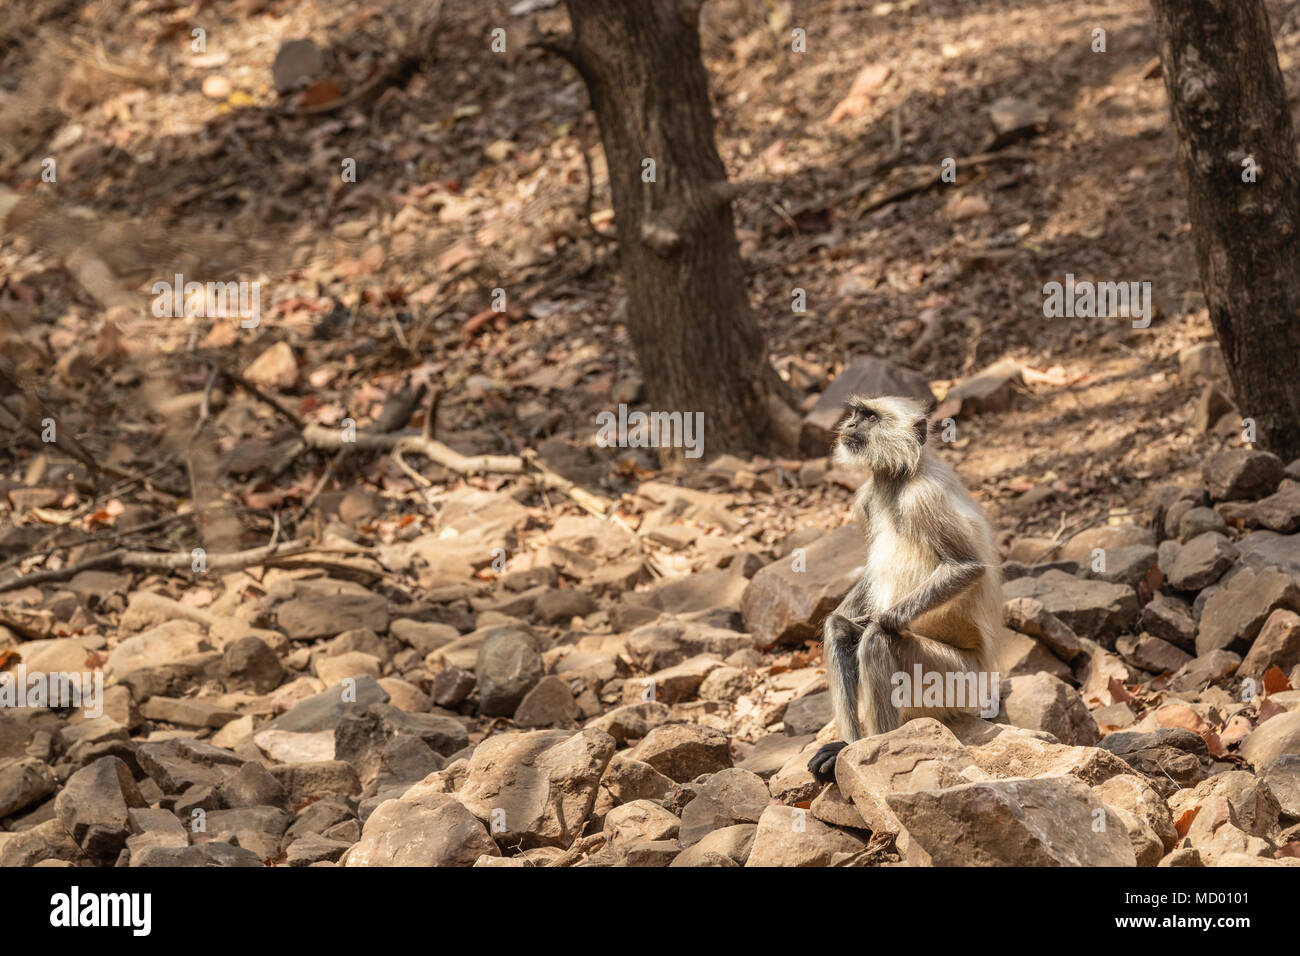 Anziani langur grigio (Semnopithecus entellus), una scimmia del Vecchio Mondo, seduti sulle rocce nel Parco nazionale di Ranthambore, Rajasthan, India settentrionale Foto Stock